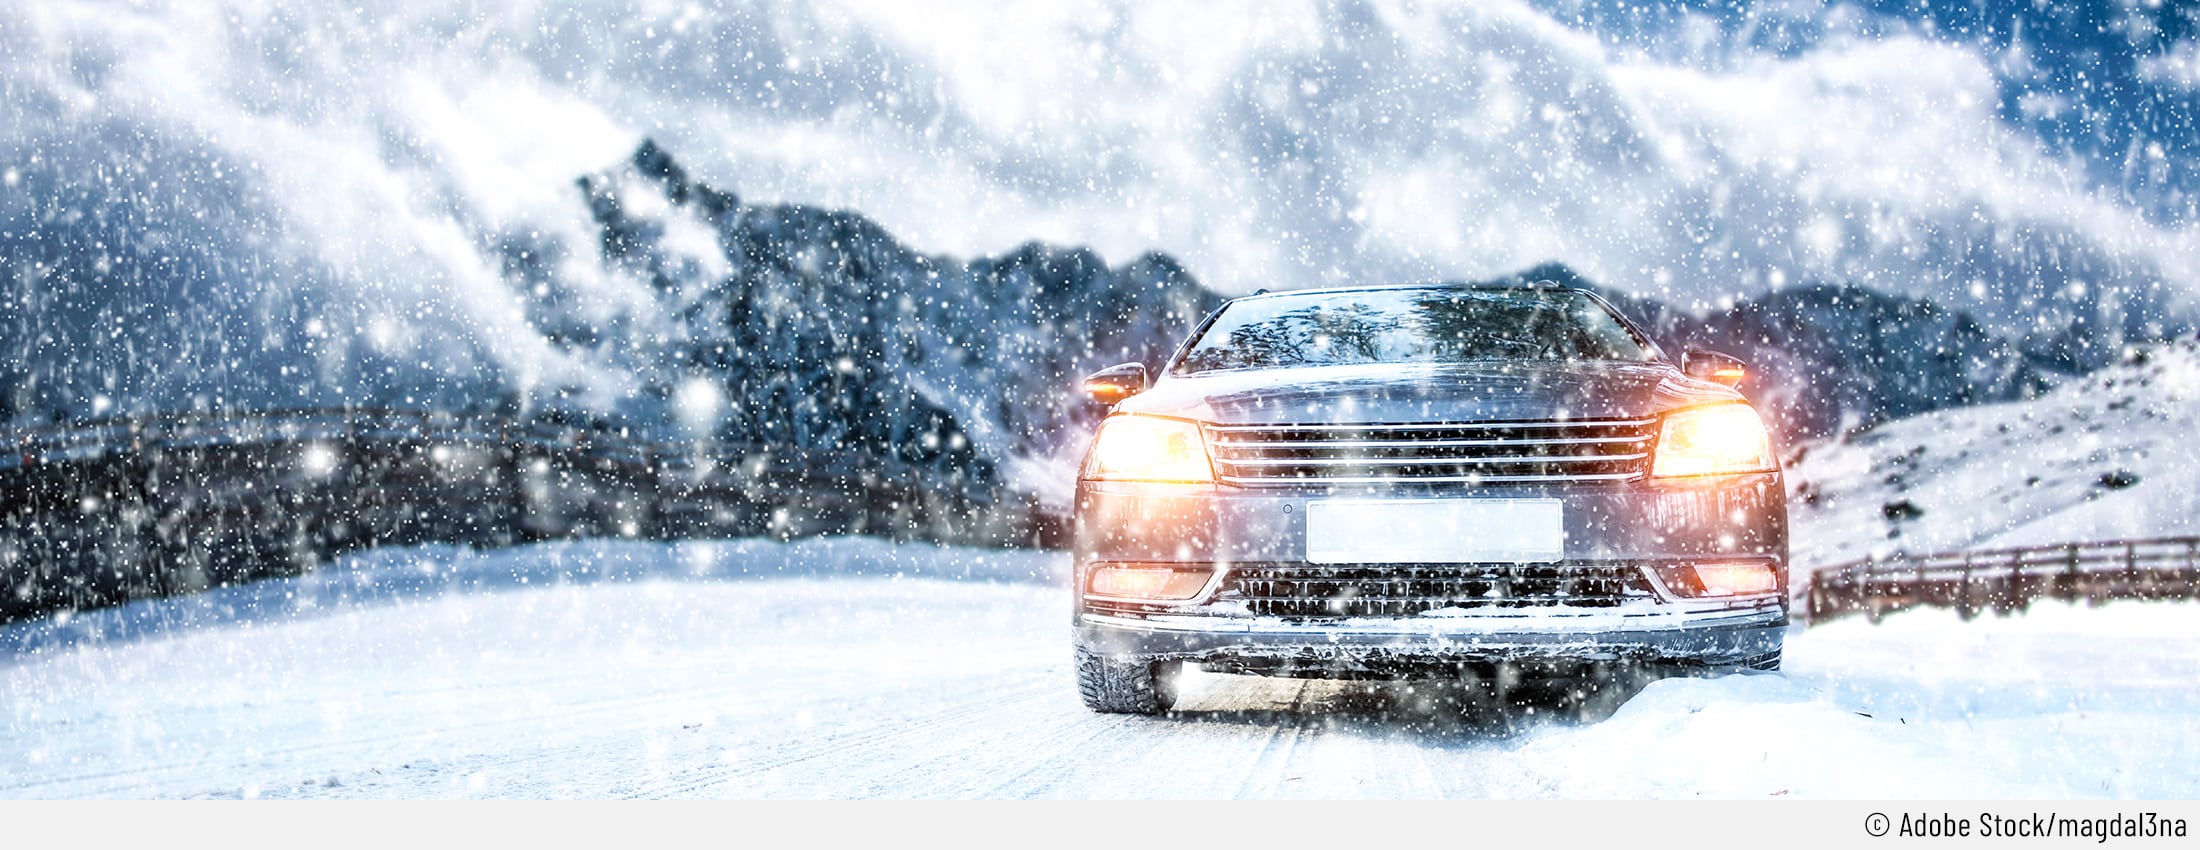 Fahrregeln fürs Auto bei Schnee und Eis